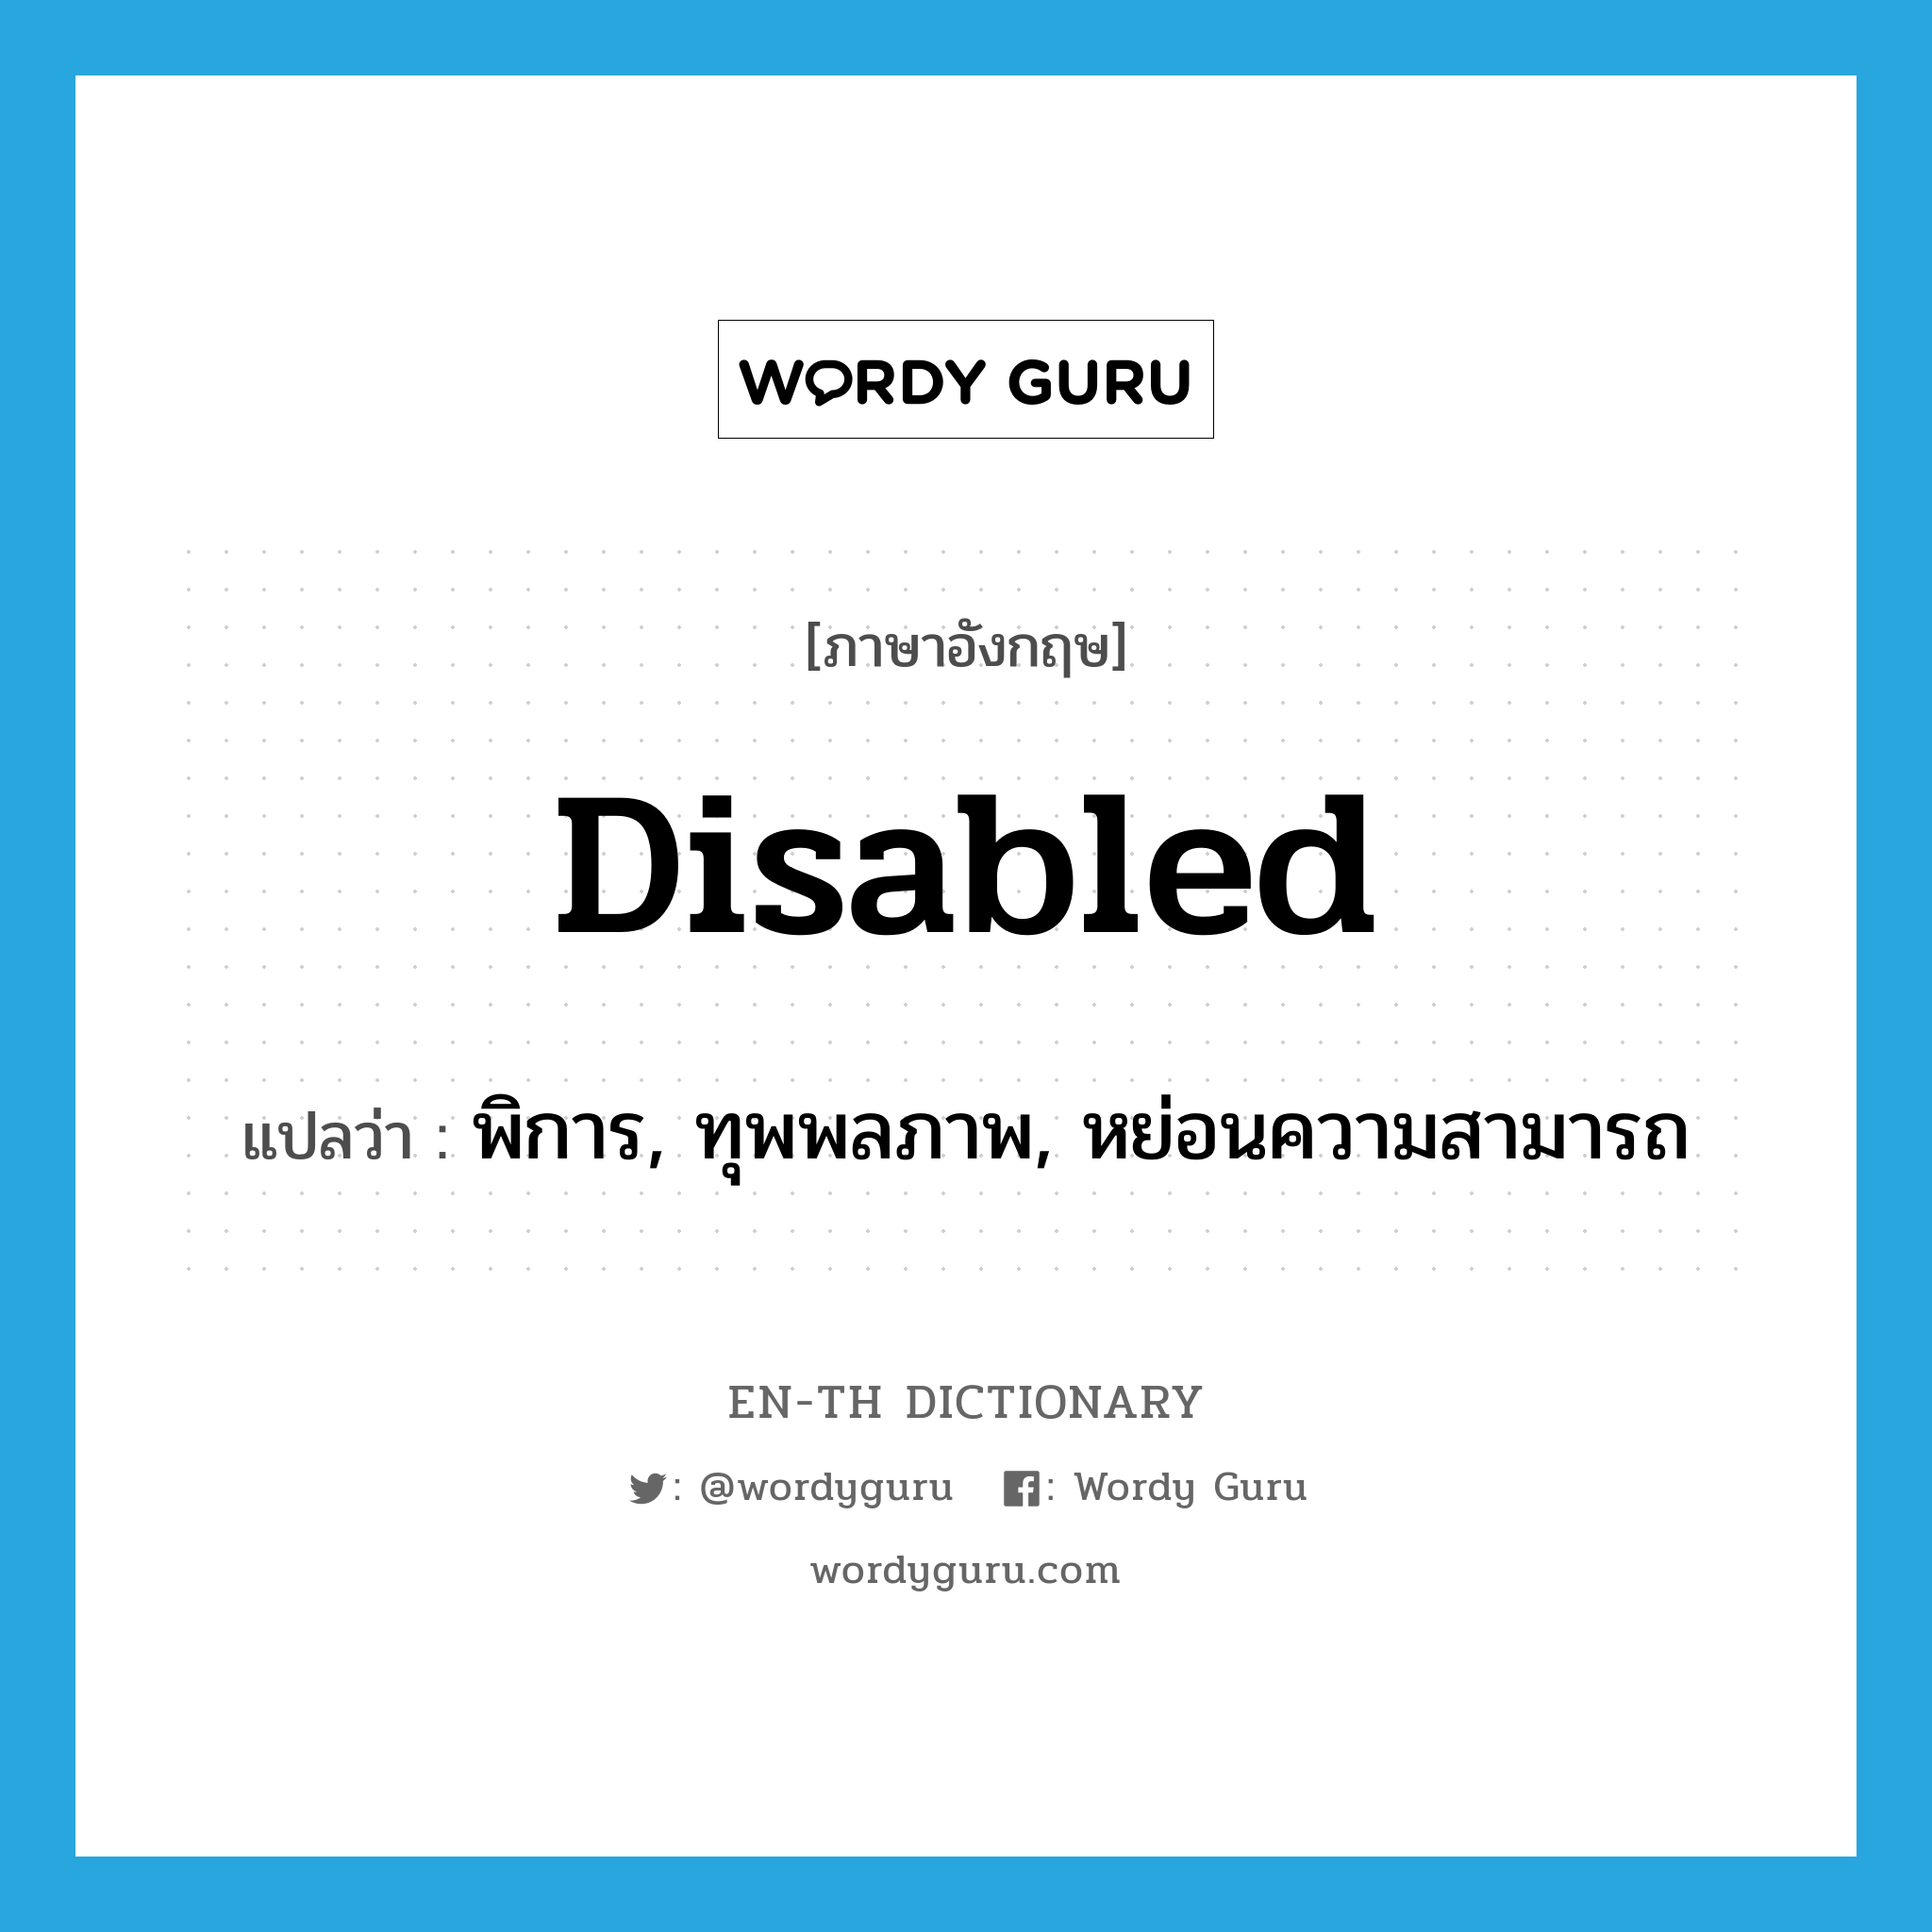 พิการ, ทุพพลภาพ, หย่อนความสามารถ ภาษาอังกฤษ?, คำศัพท์ภาษาอังกฤษ พิการ, ทุพพลภาพ, หย่อนความสามารถ แปลว่า disabled ประเภท ADJ หมวด ADJ